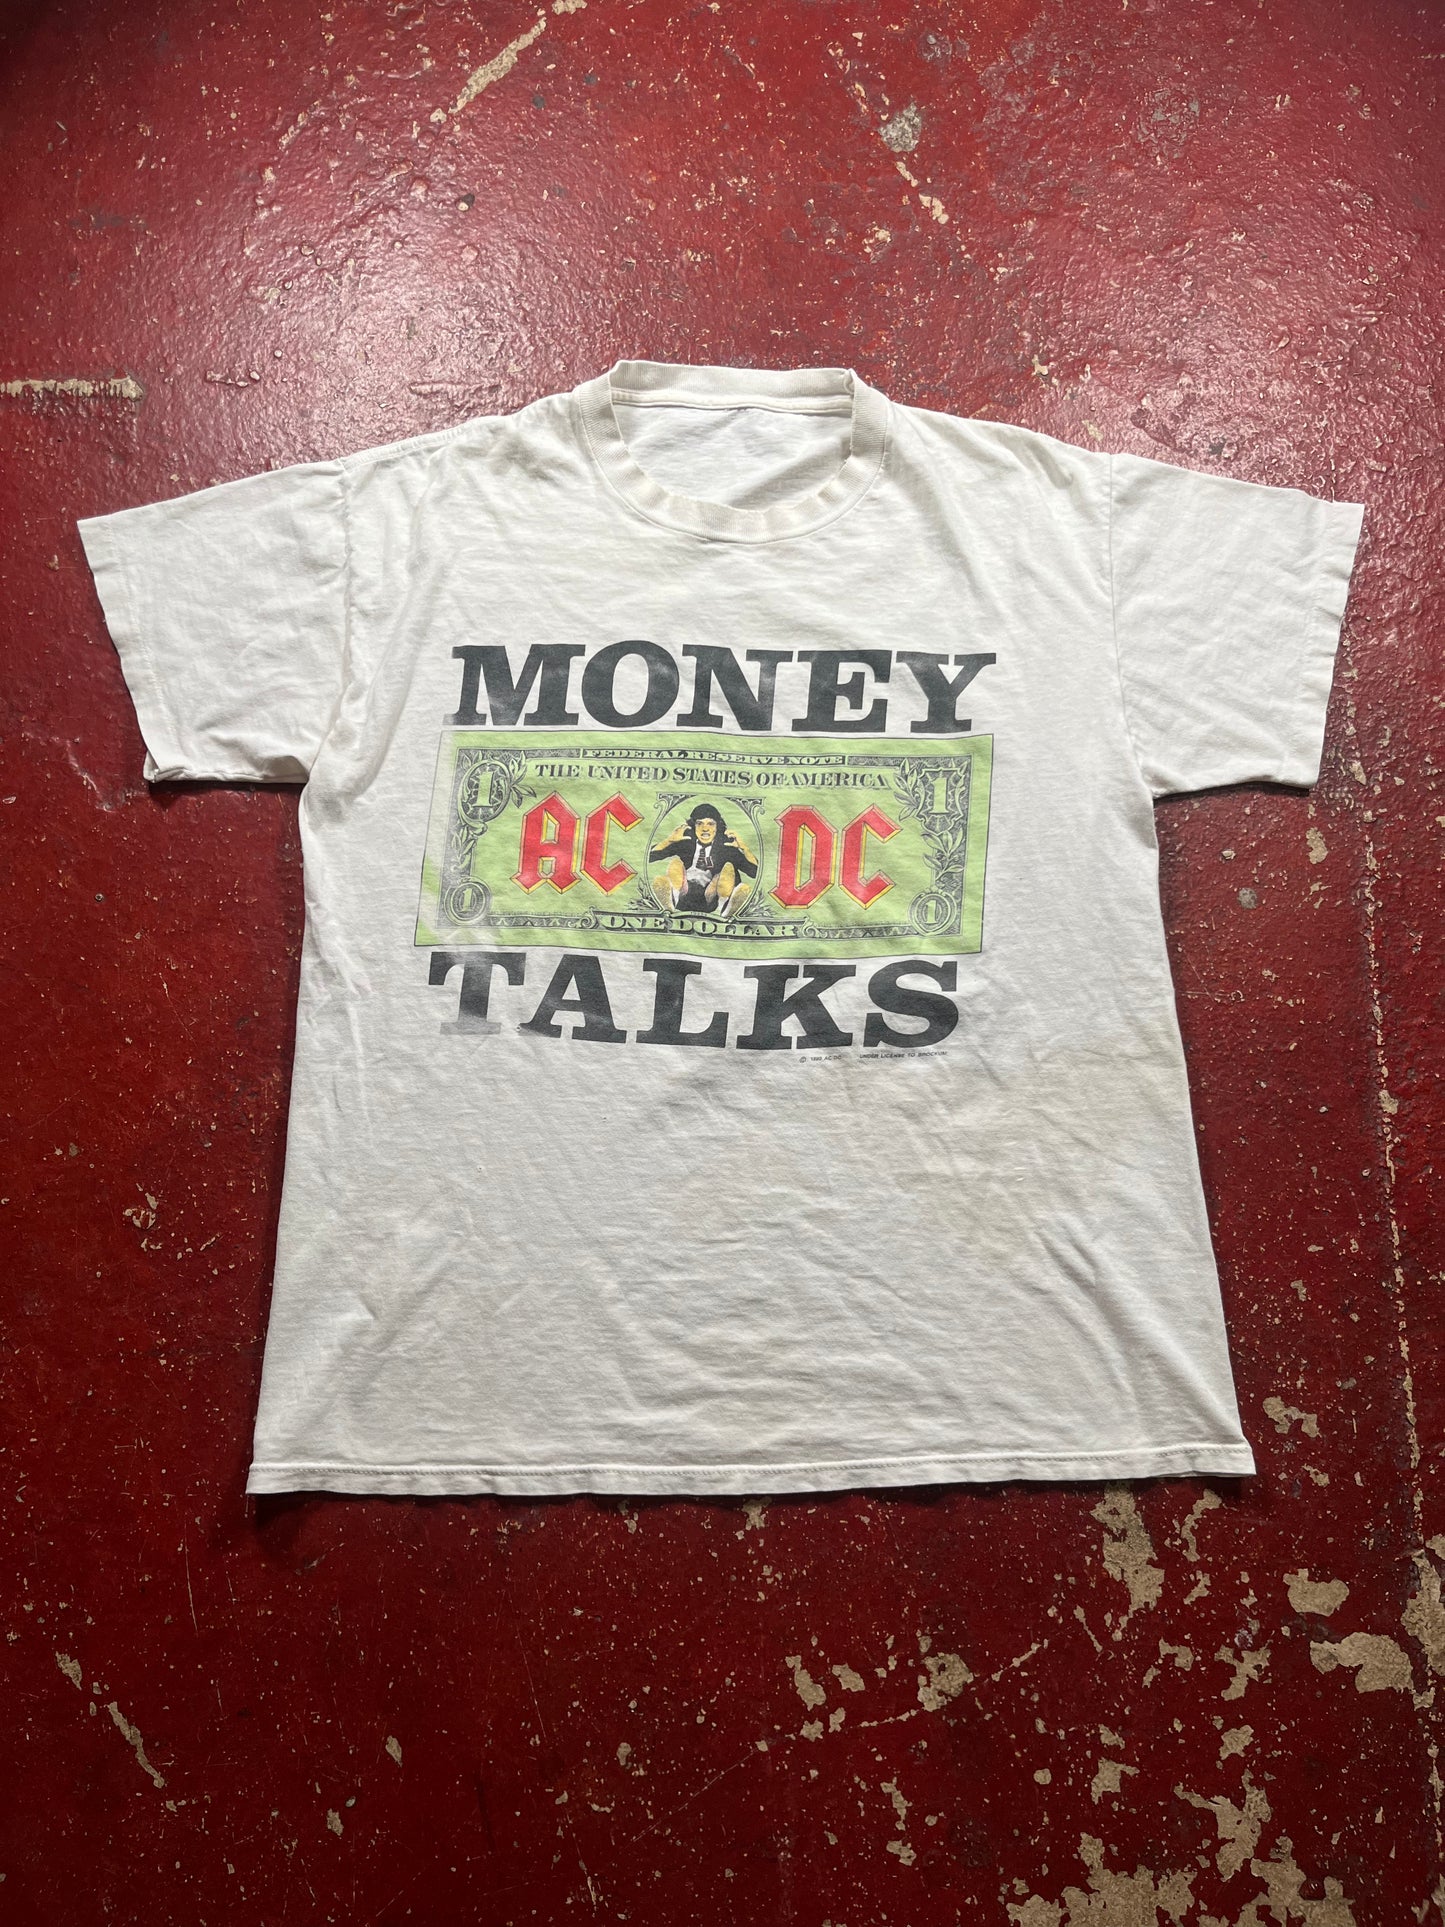 1990 ACDC “Money Talks” Tee